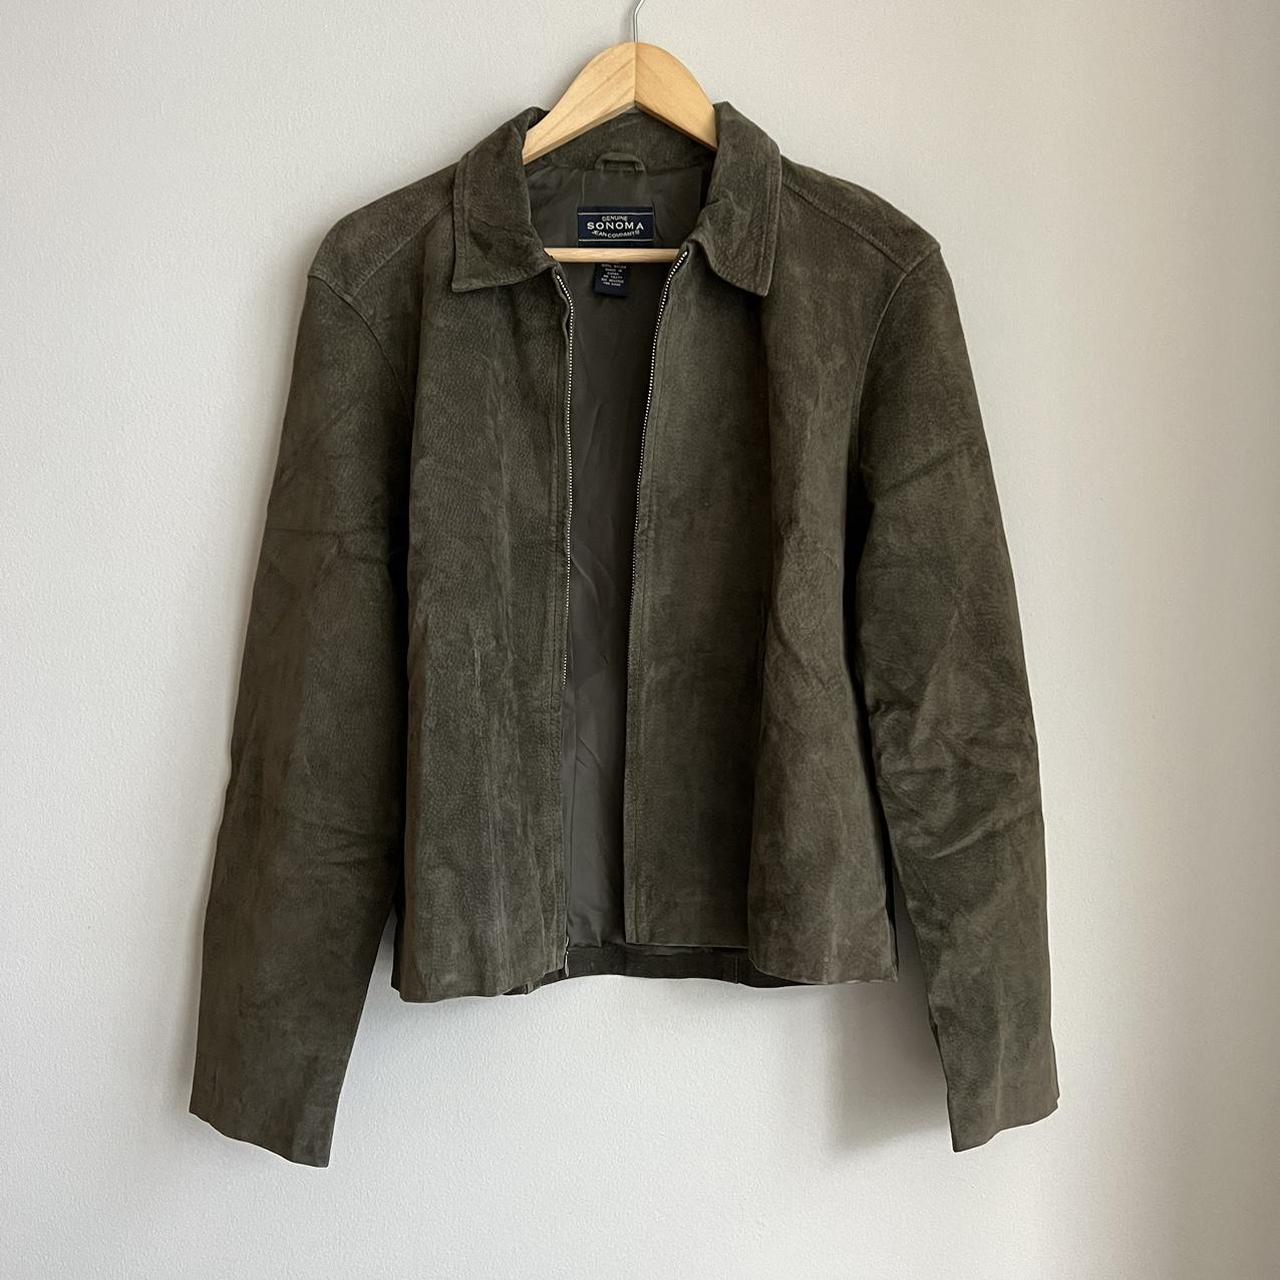 Olive green suede leather jacket. Size large, fits... - Depop